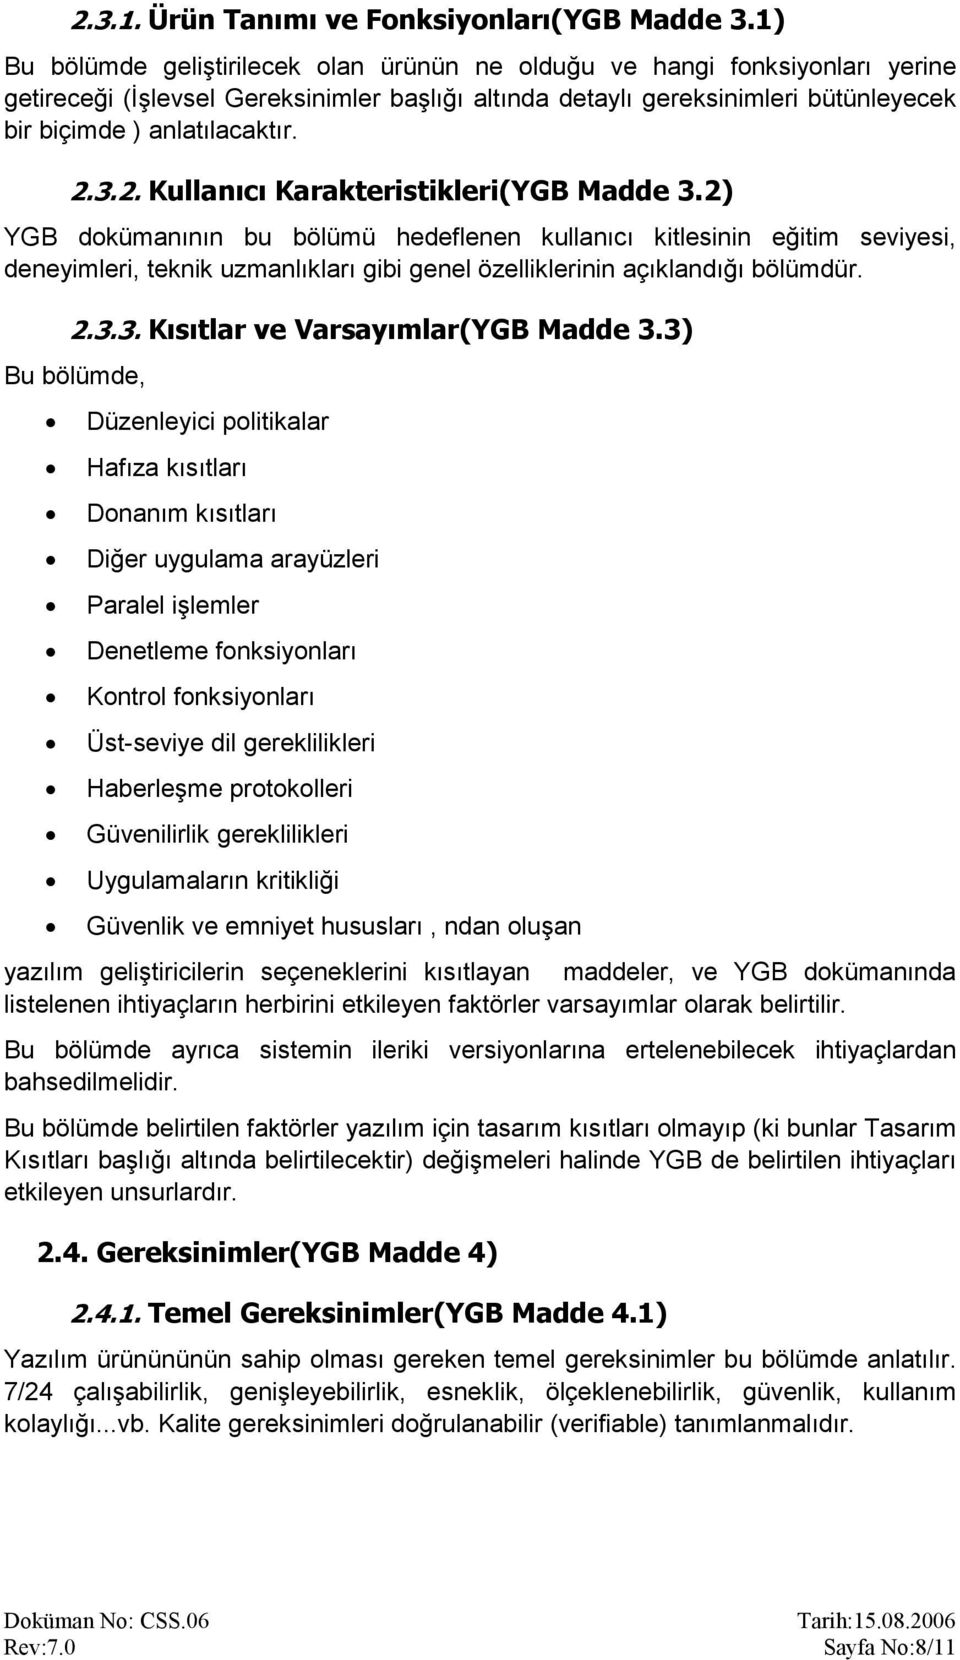 3.2. Kullanıcı Karakteristikleri(YGB Madde 3.